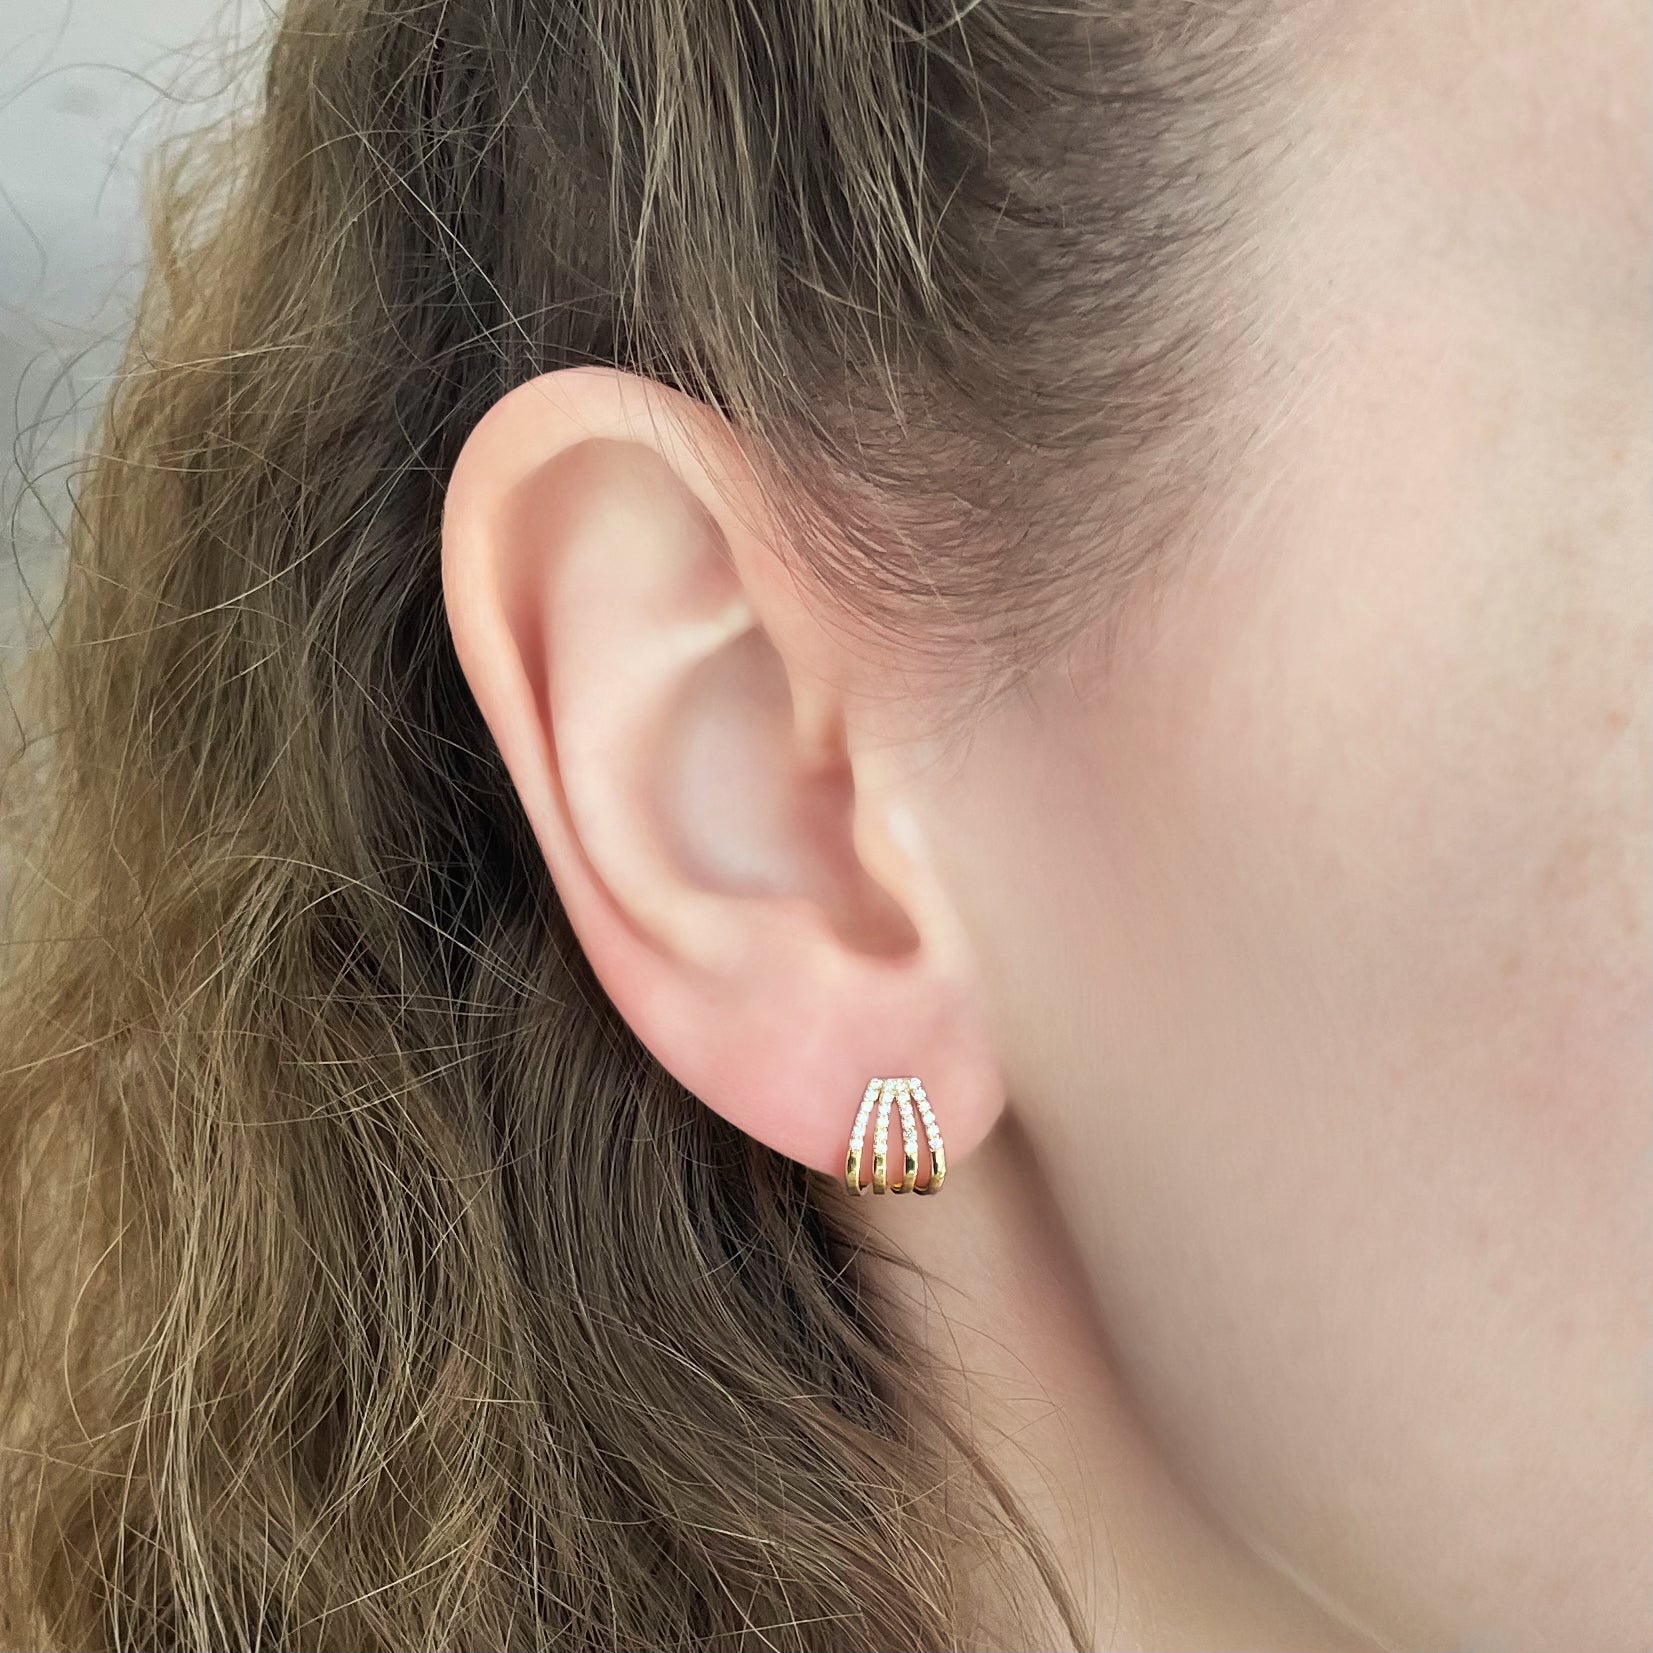 Triple Row Pavé Diamond Ear Cuff Huggies Earrings - - Jewelry - Goldie Paris Jewelry - Earring